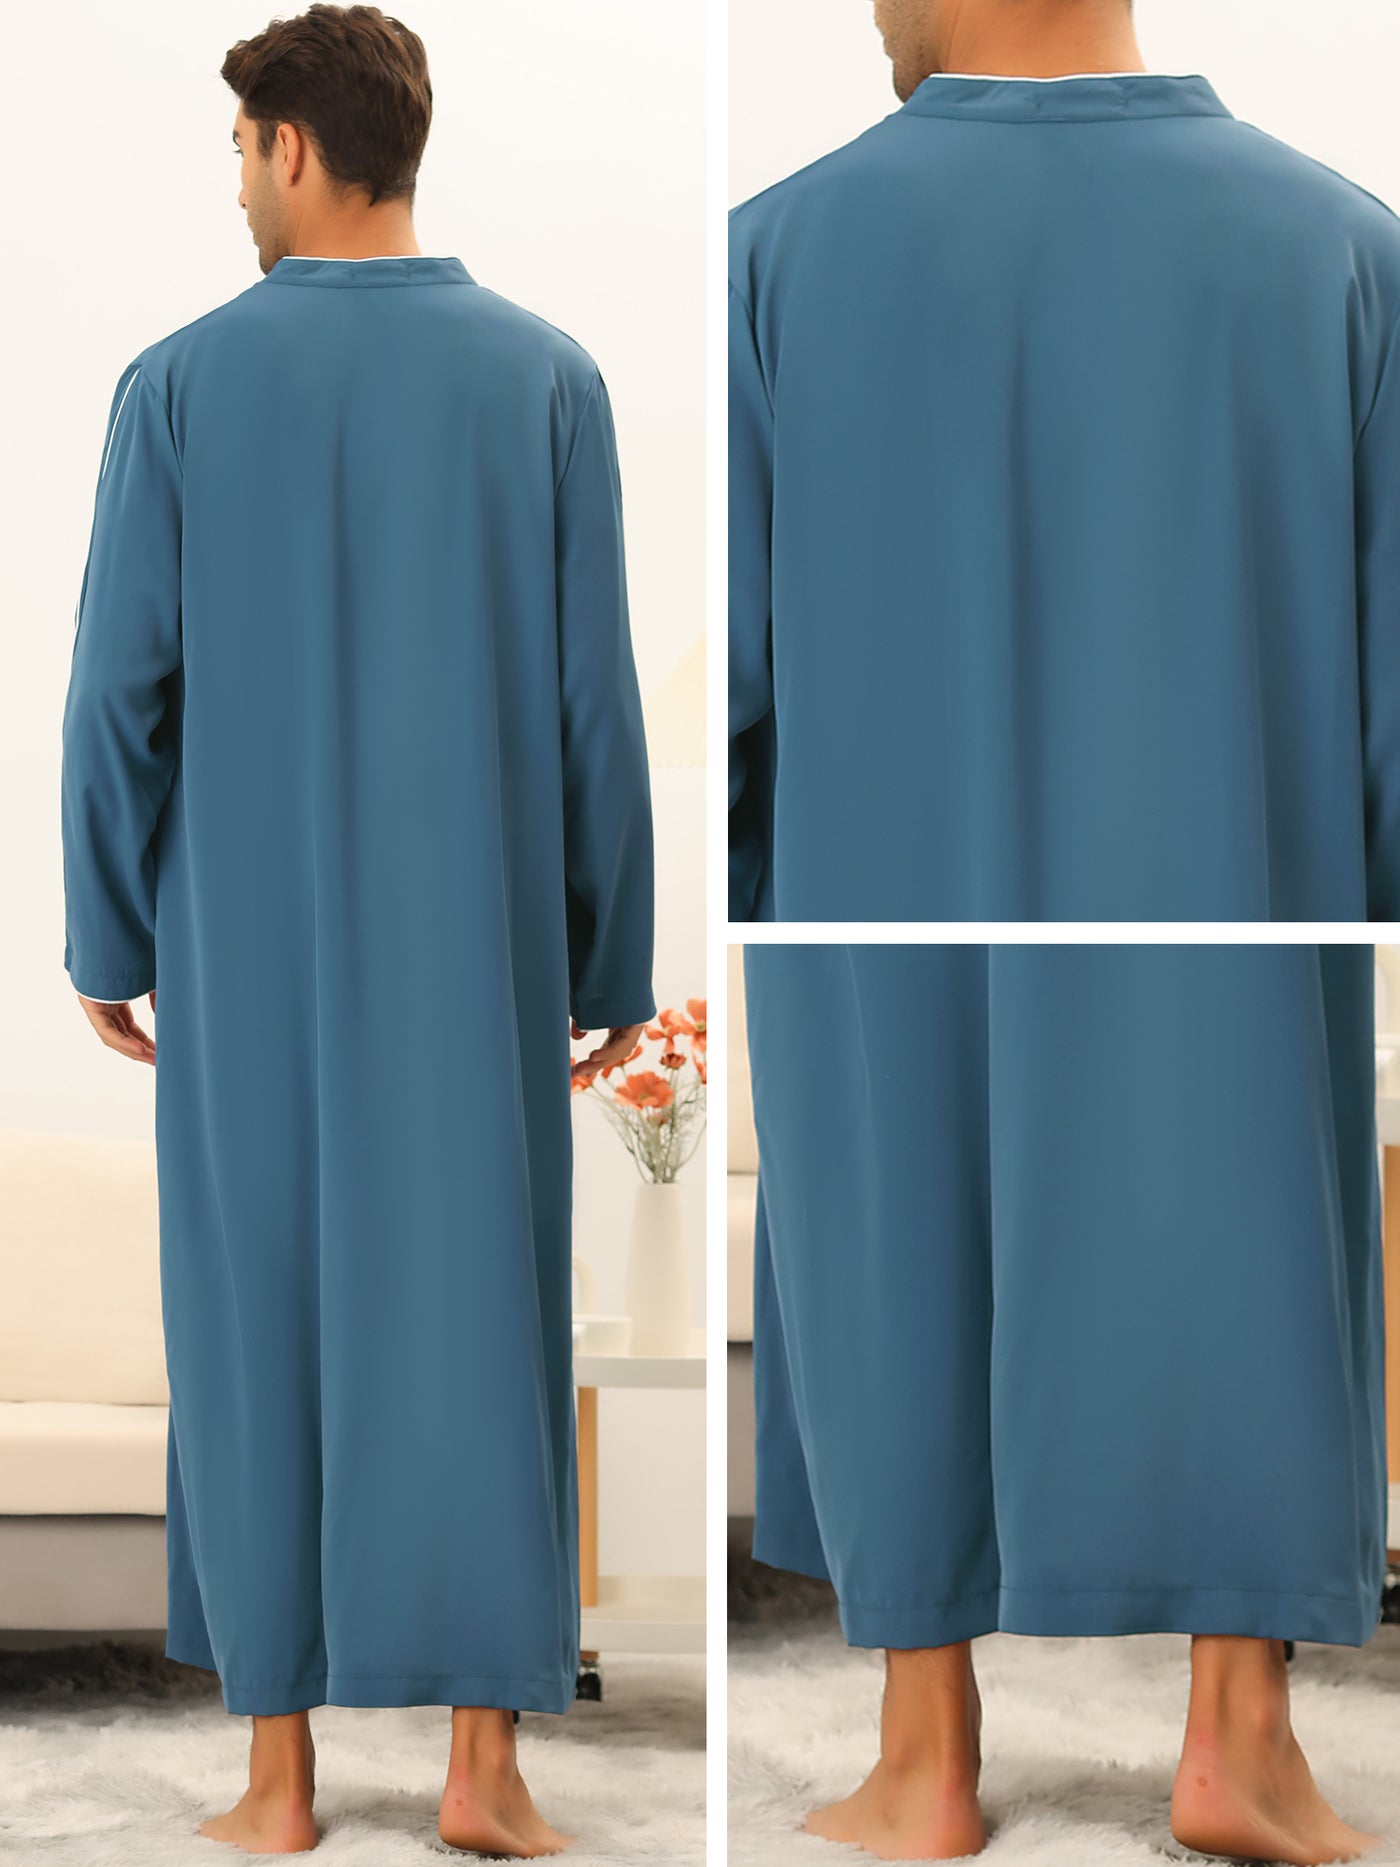 Bublédon Men's Sleep Shirt Long Sleeve Solid Banded Collar Sleepwear Nightgown